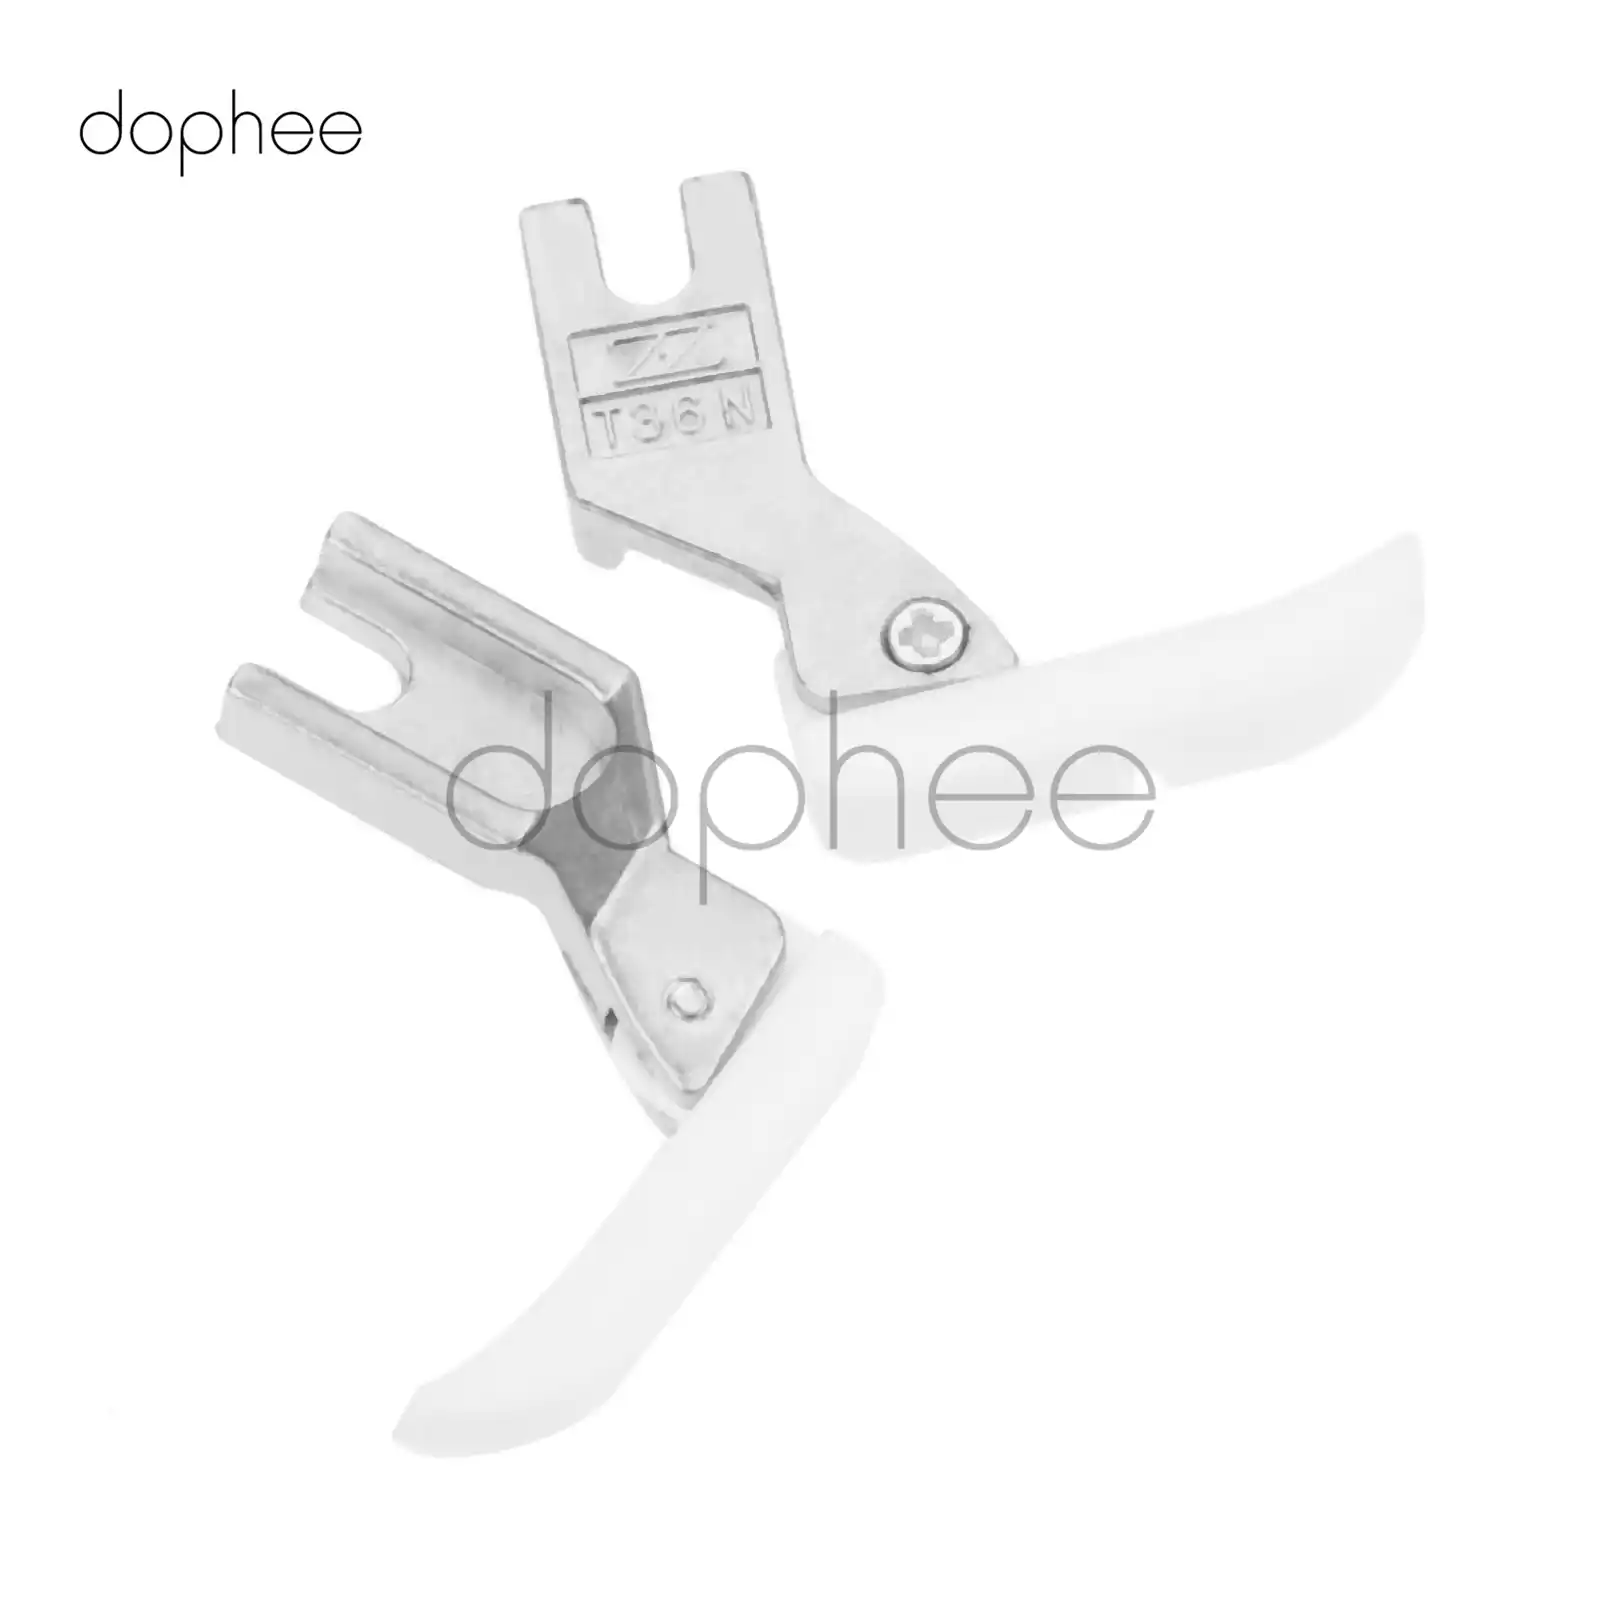 dophee 2pcs Narrow Zipper Foot Sewing 